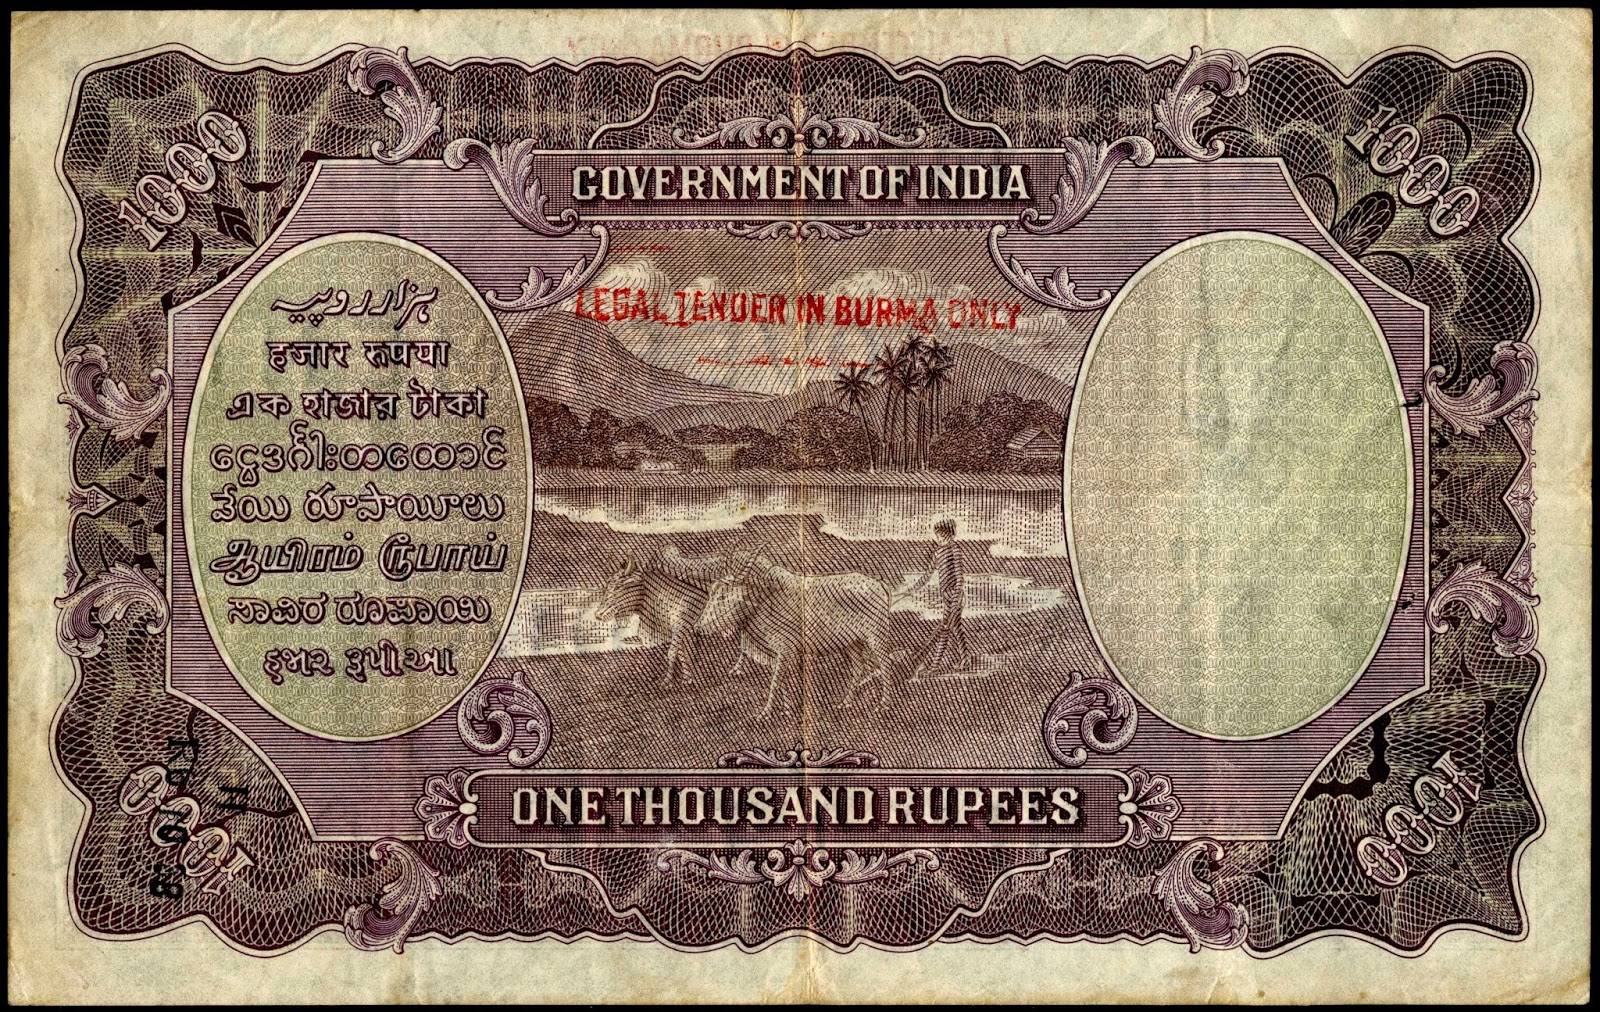 T me banknotes. Первые бумажные рупии. Купюра 1000 рупий Индия. 1000 Rupees 1937. 1000 Индийских рупий.